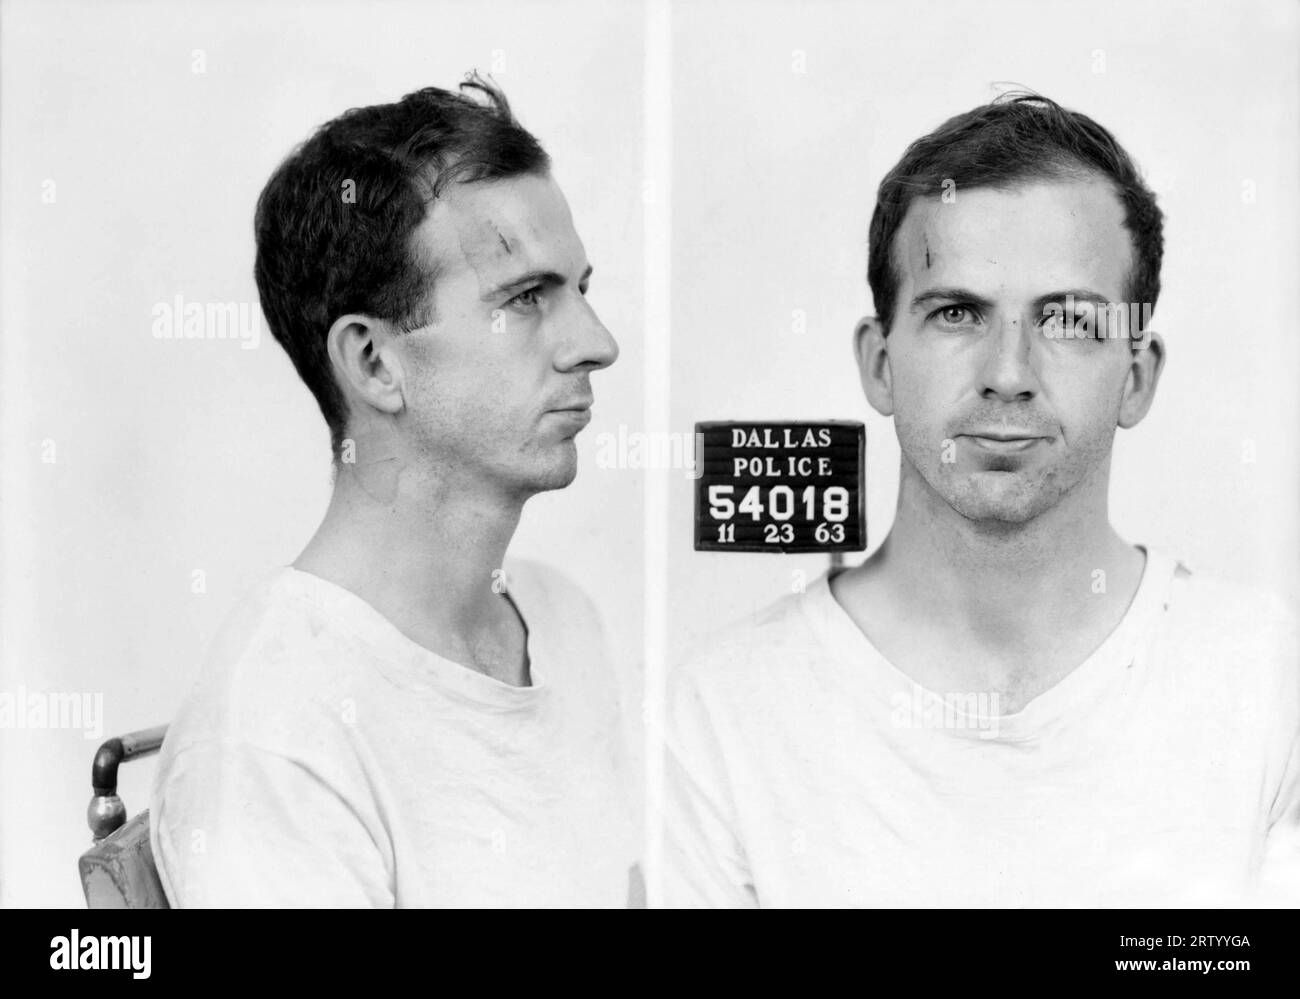 1963 , 23. November, DALLAS, TEXAS, USA: LEE HARVEY OSWALD ( 1939–1963 ), der Mordanschlag des Polizeiministeriums war angeblich der Mörder, der US-Präsident JOHN FITZGERALD KENNEDY in Dallas ermordet hat. Getötet am nächsten Tag, dem 24. November, von Jack Ruby ( 1911–1967 ). Unbekannter Fotograf. - Porträt - Porträt - Polizeifoto - Maulwurf - MAULWURF - MAULWURF - Mörder - UNGELÖSTES GEHEIMNIS - UNGELÖSTES GEHEIMNIS - VERBRECHEN - MÖRDER - HANDLUNG - VERSCHWÖRUNG - SPION - SPION --- GBB-Archiv Stockfoto